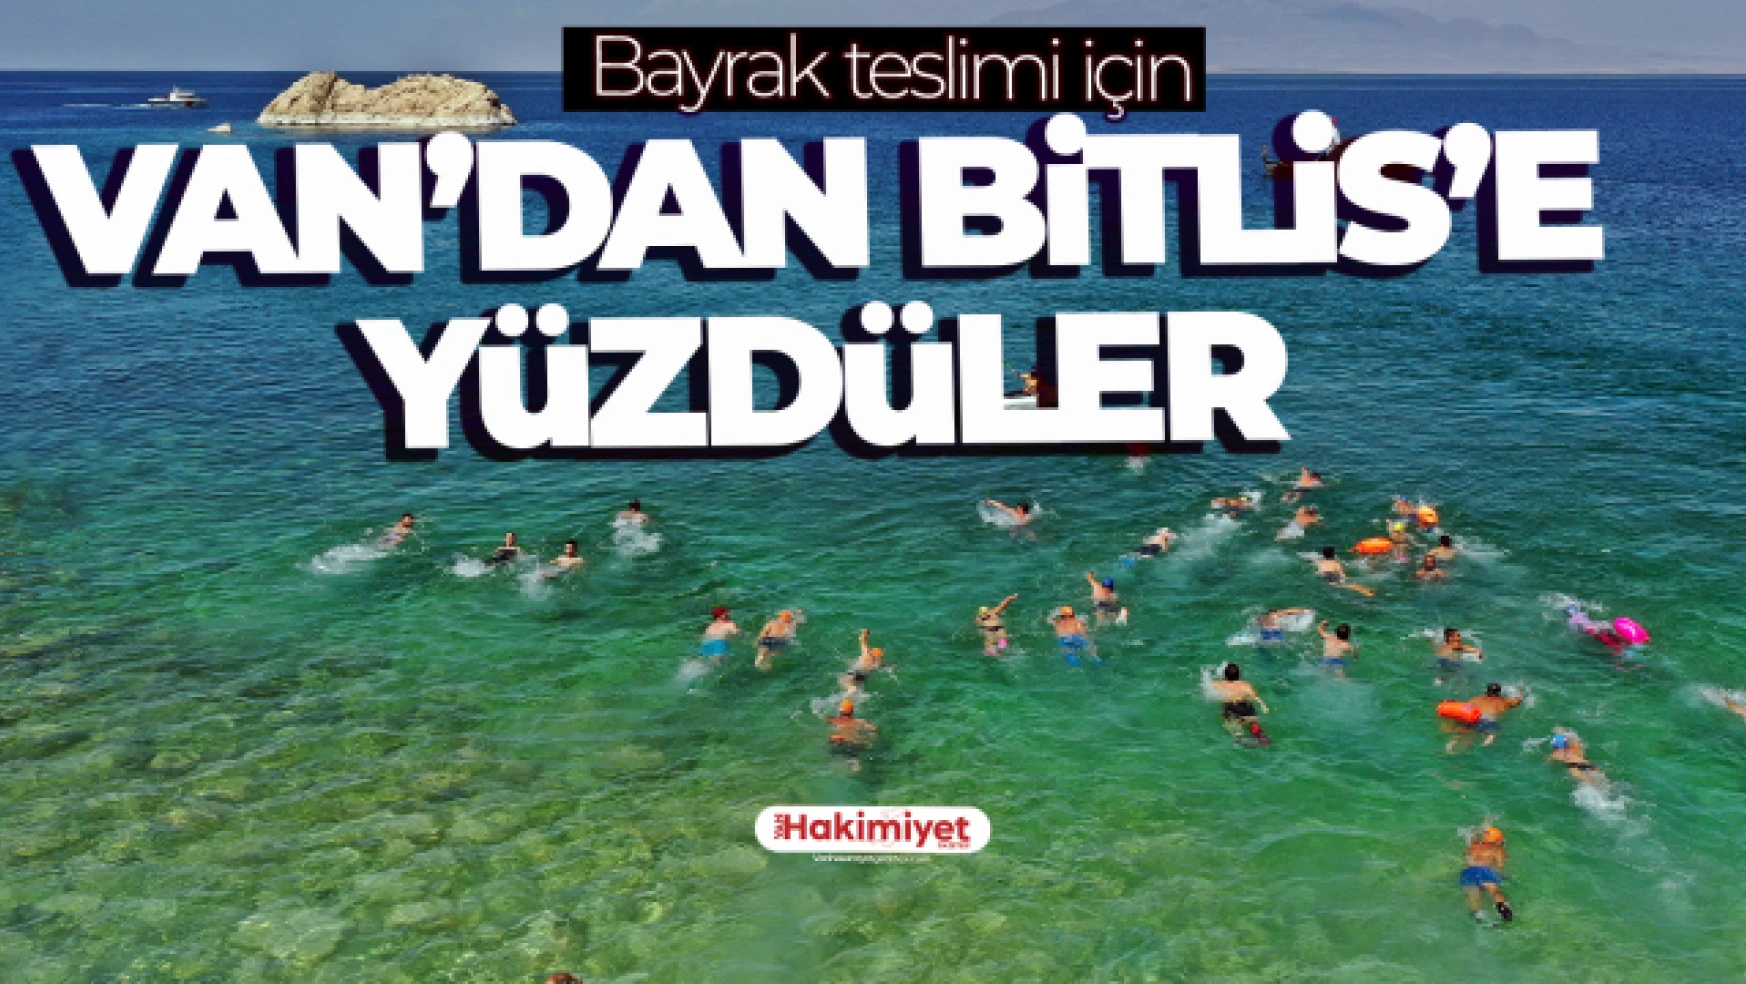 Bayrak teslimi için Van'dan Bitlis'e yüzdüler